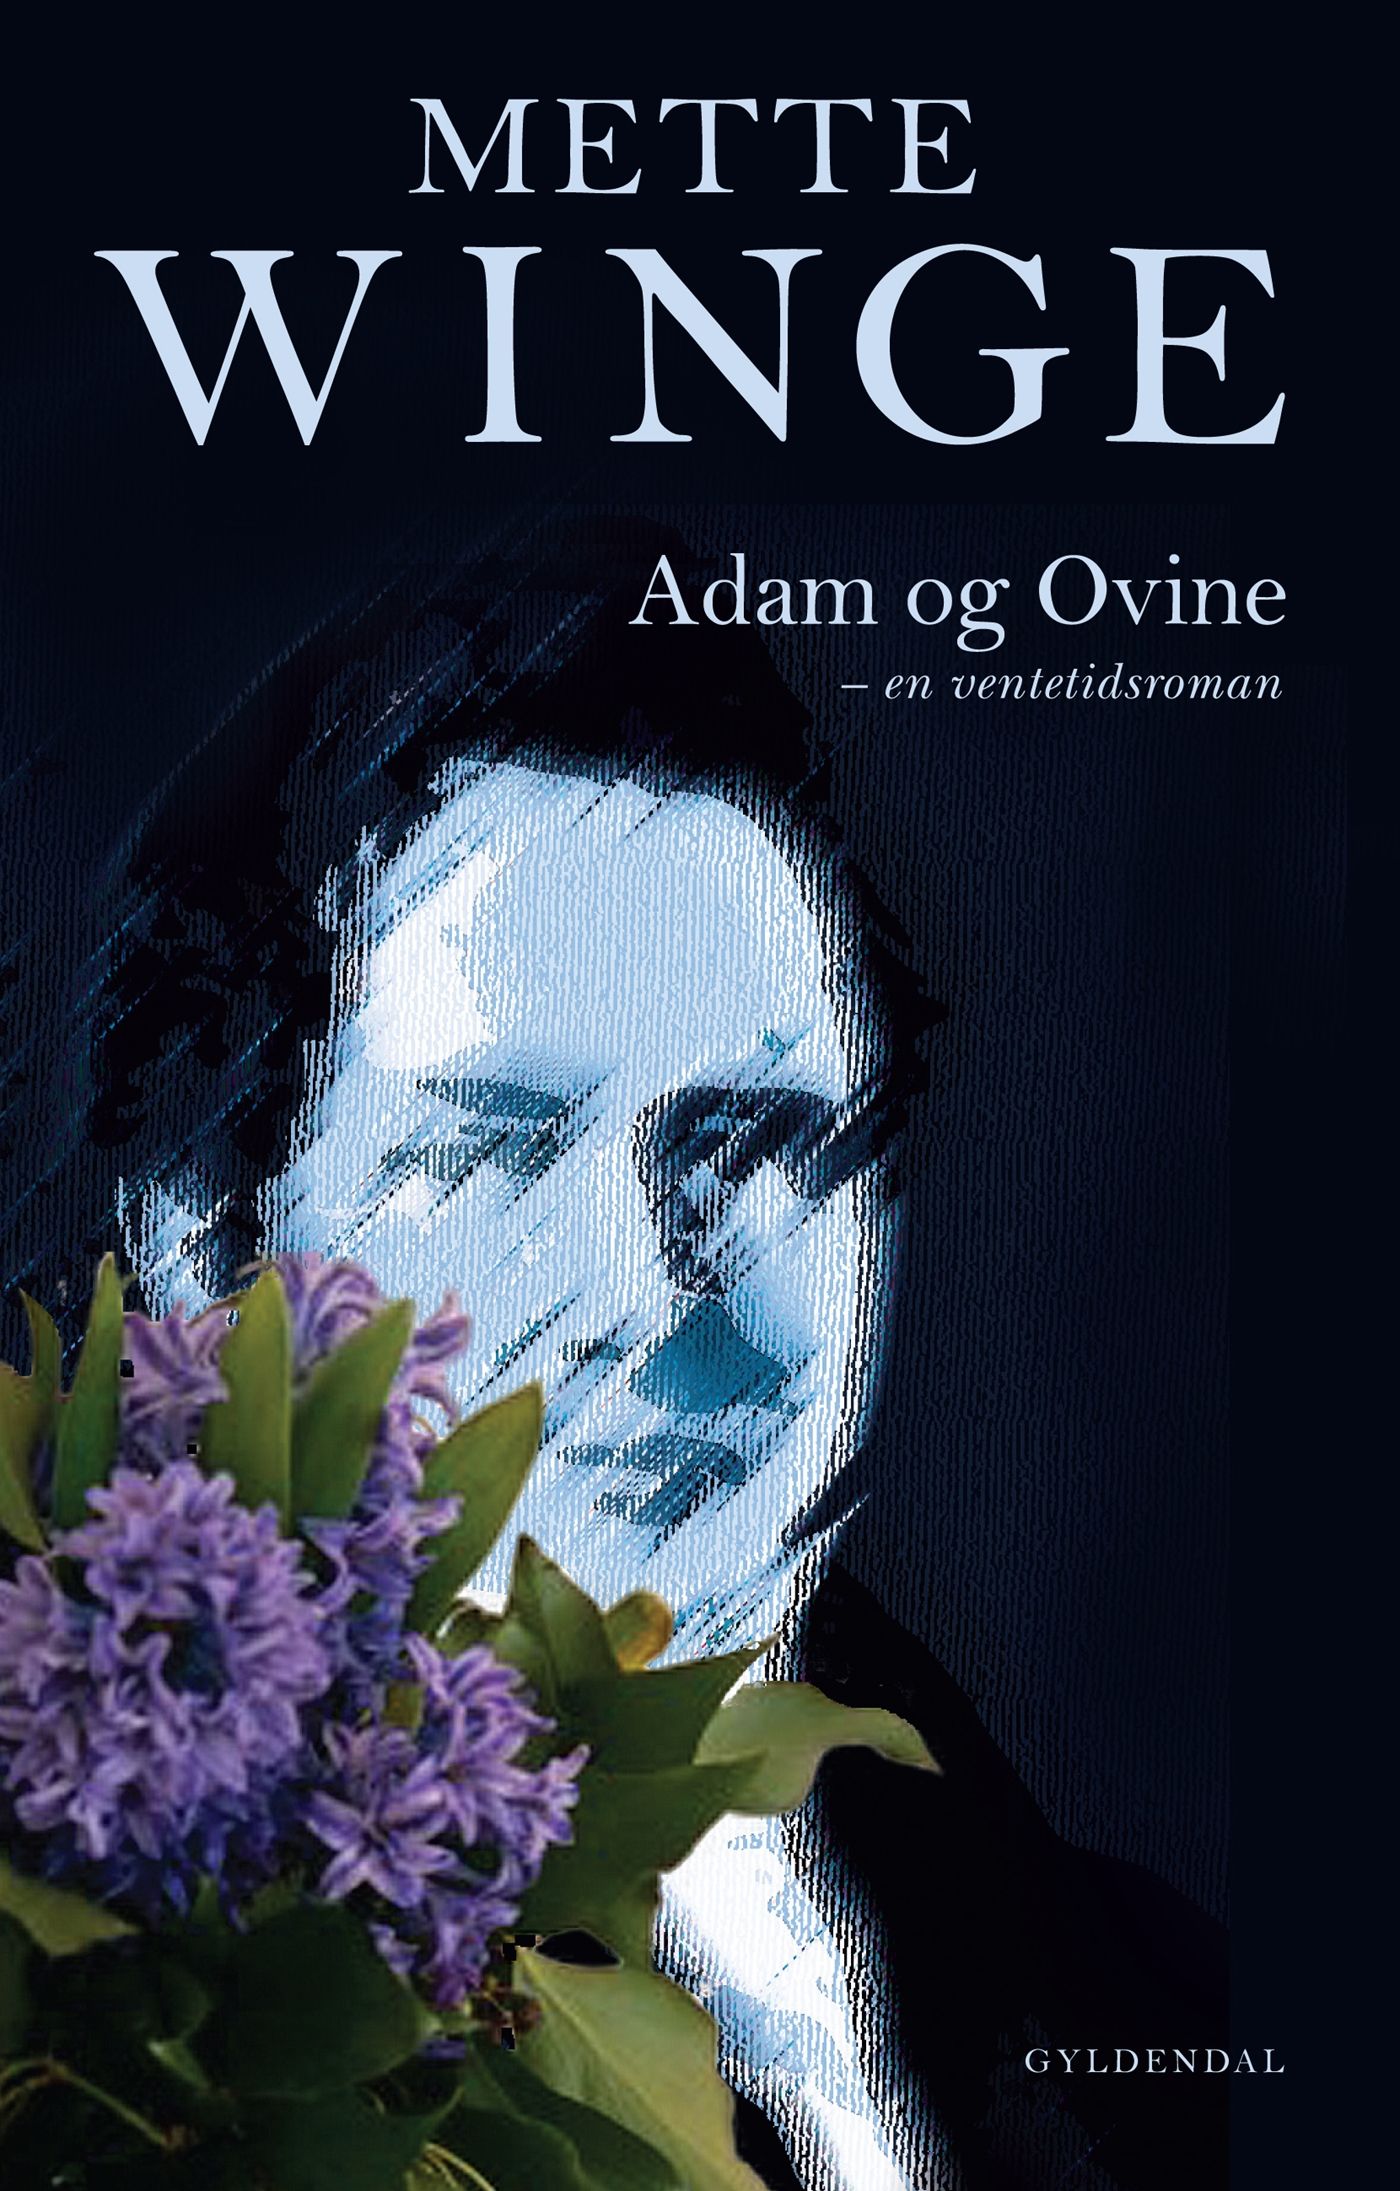 Adam og Ovine, e-bok av Mette Winge